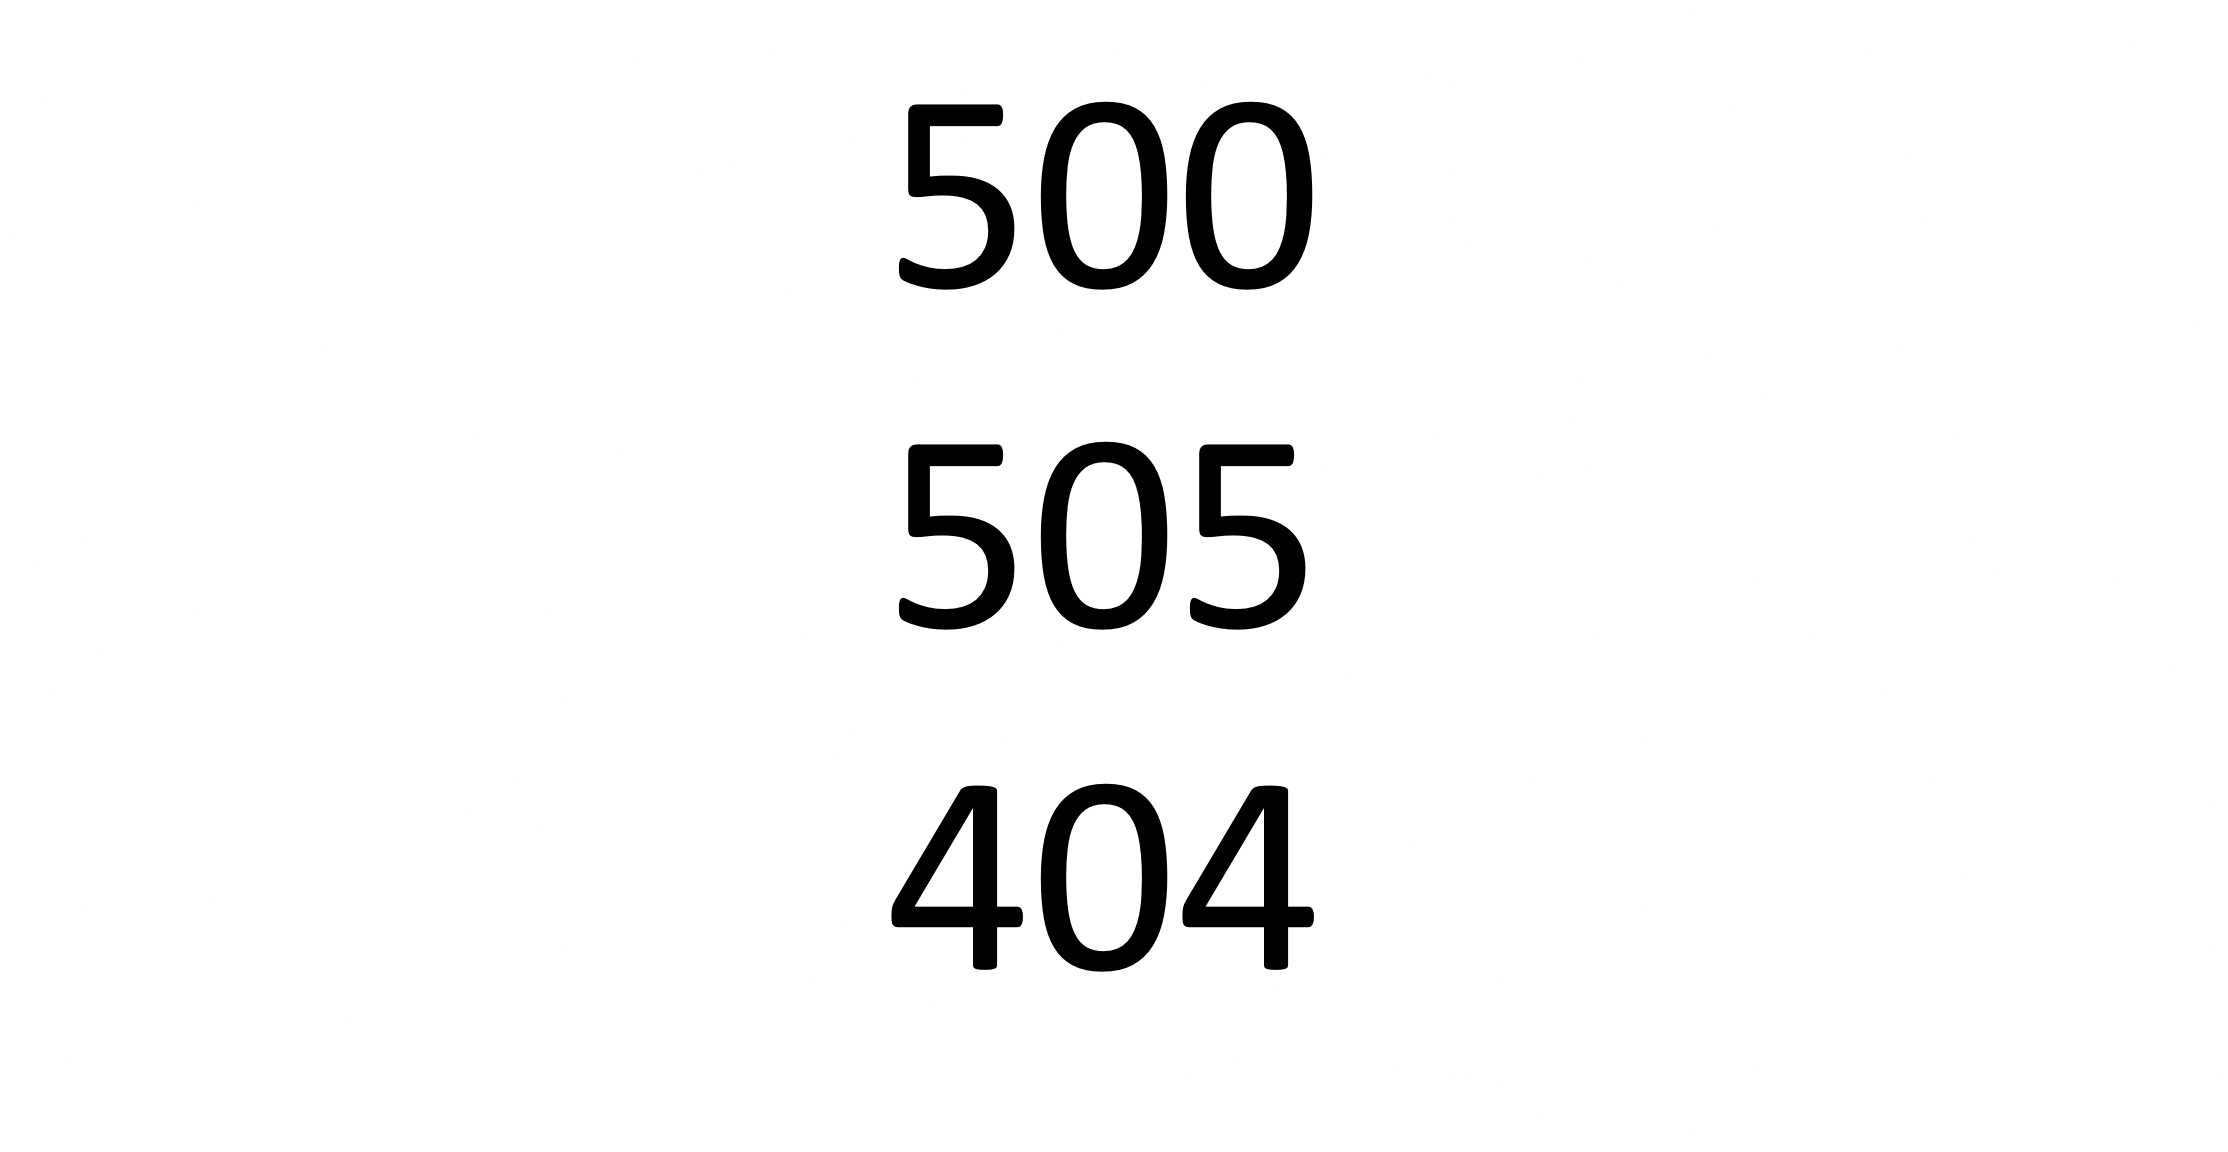 500 / 505 / 404 - mega łatwy złoty numer !!